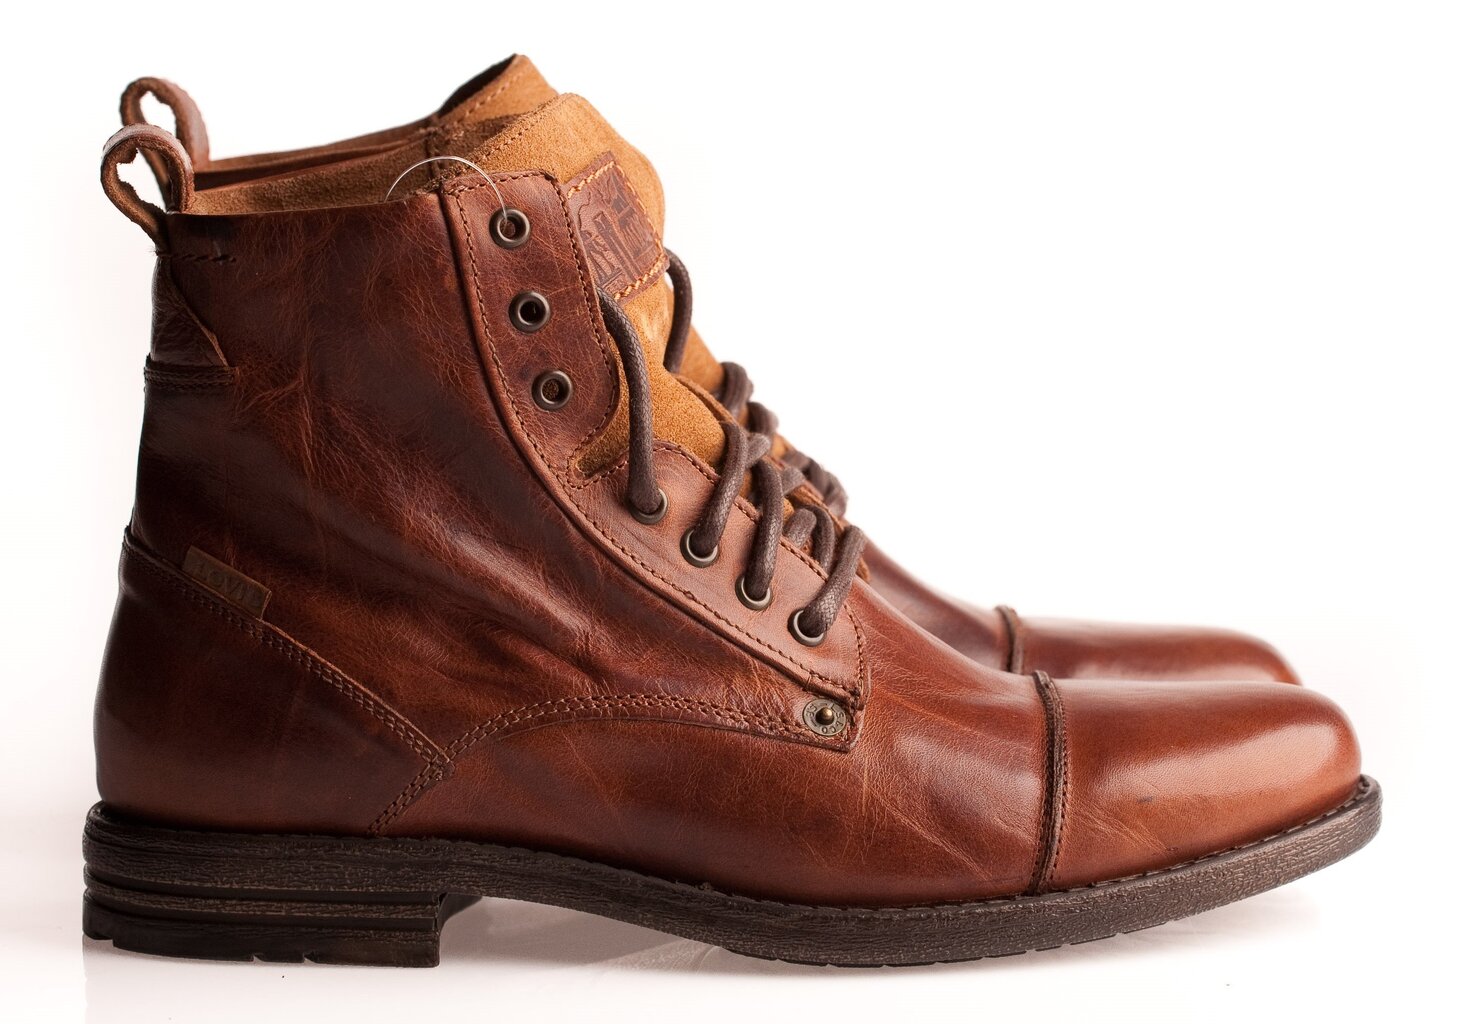 Vyriški batai Levi's Emerson, rudi kaina ir informacija | Vyriški batai | pigu.lt